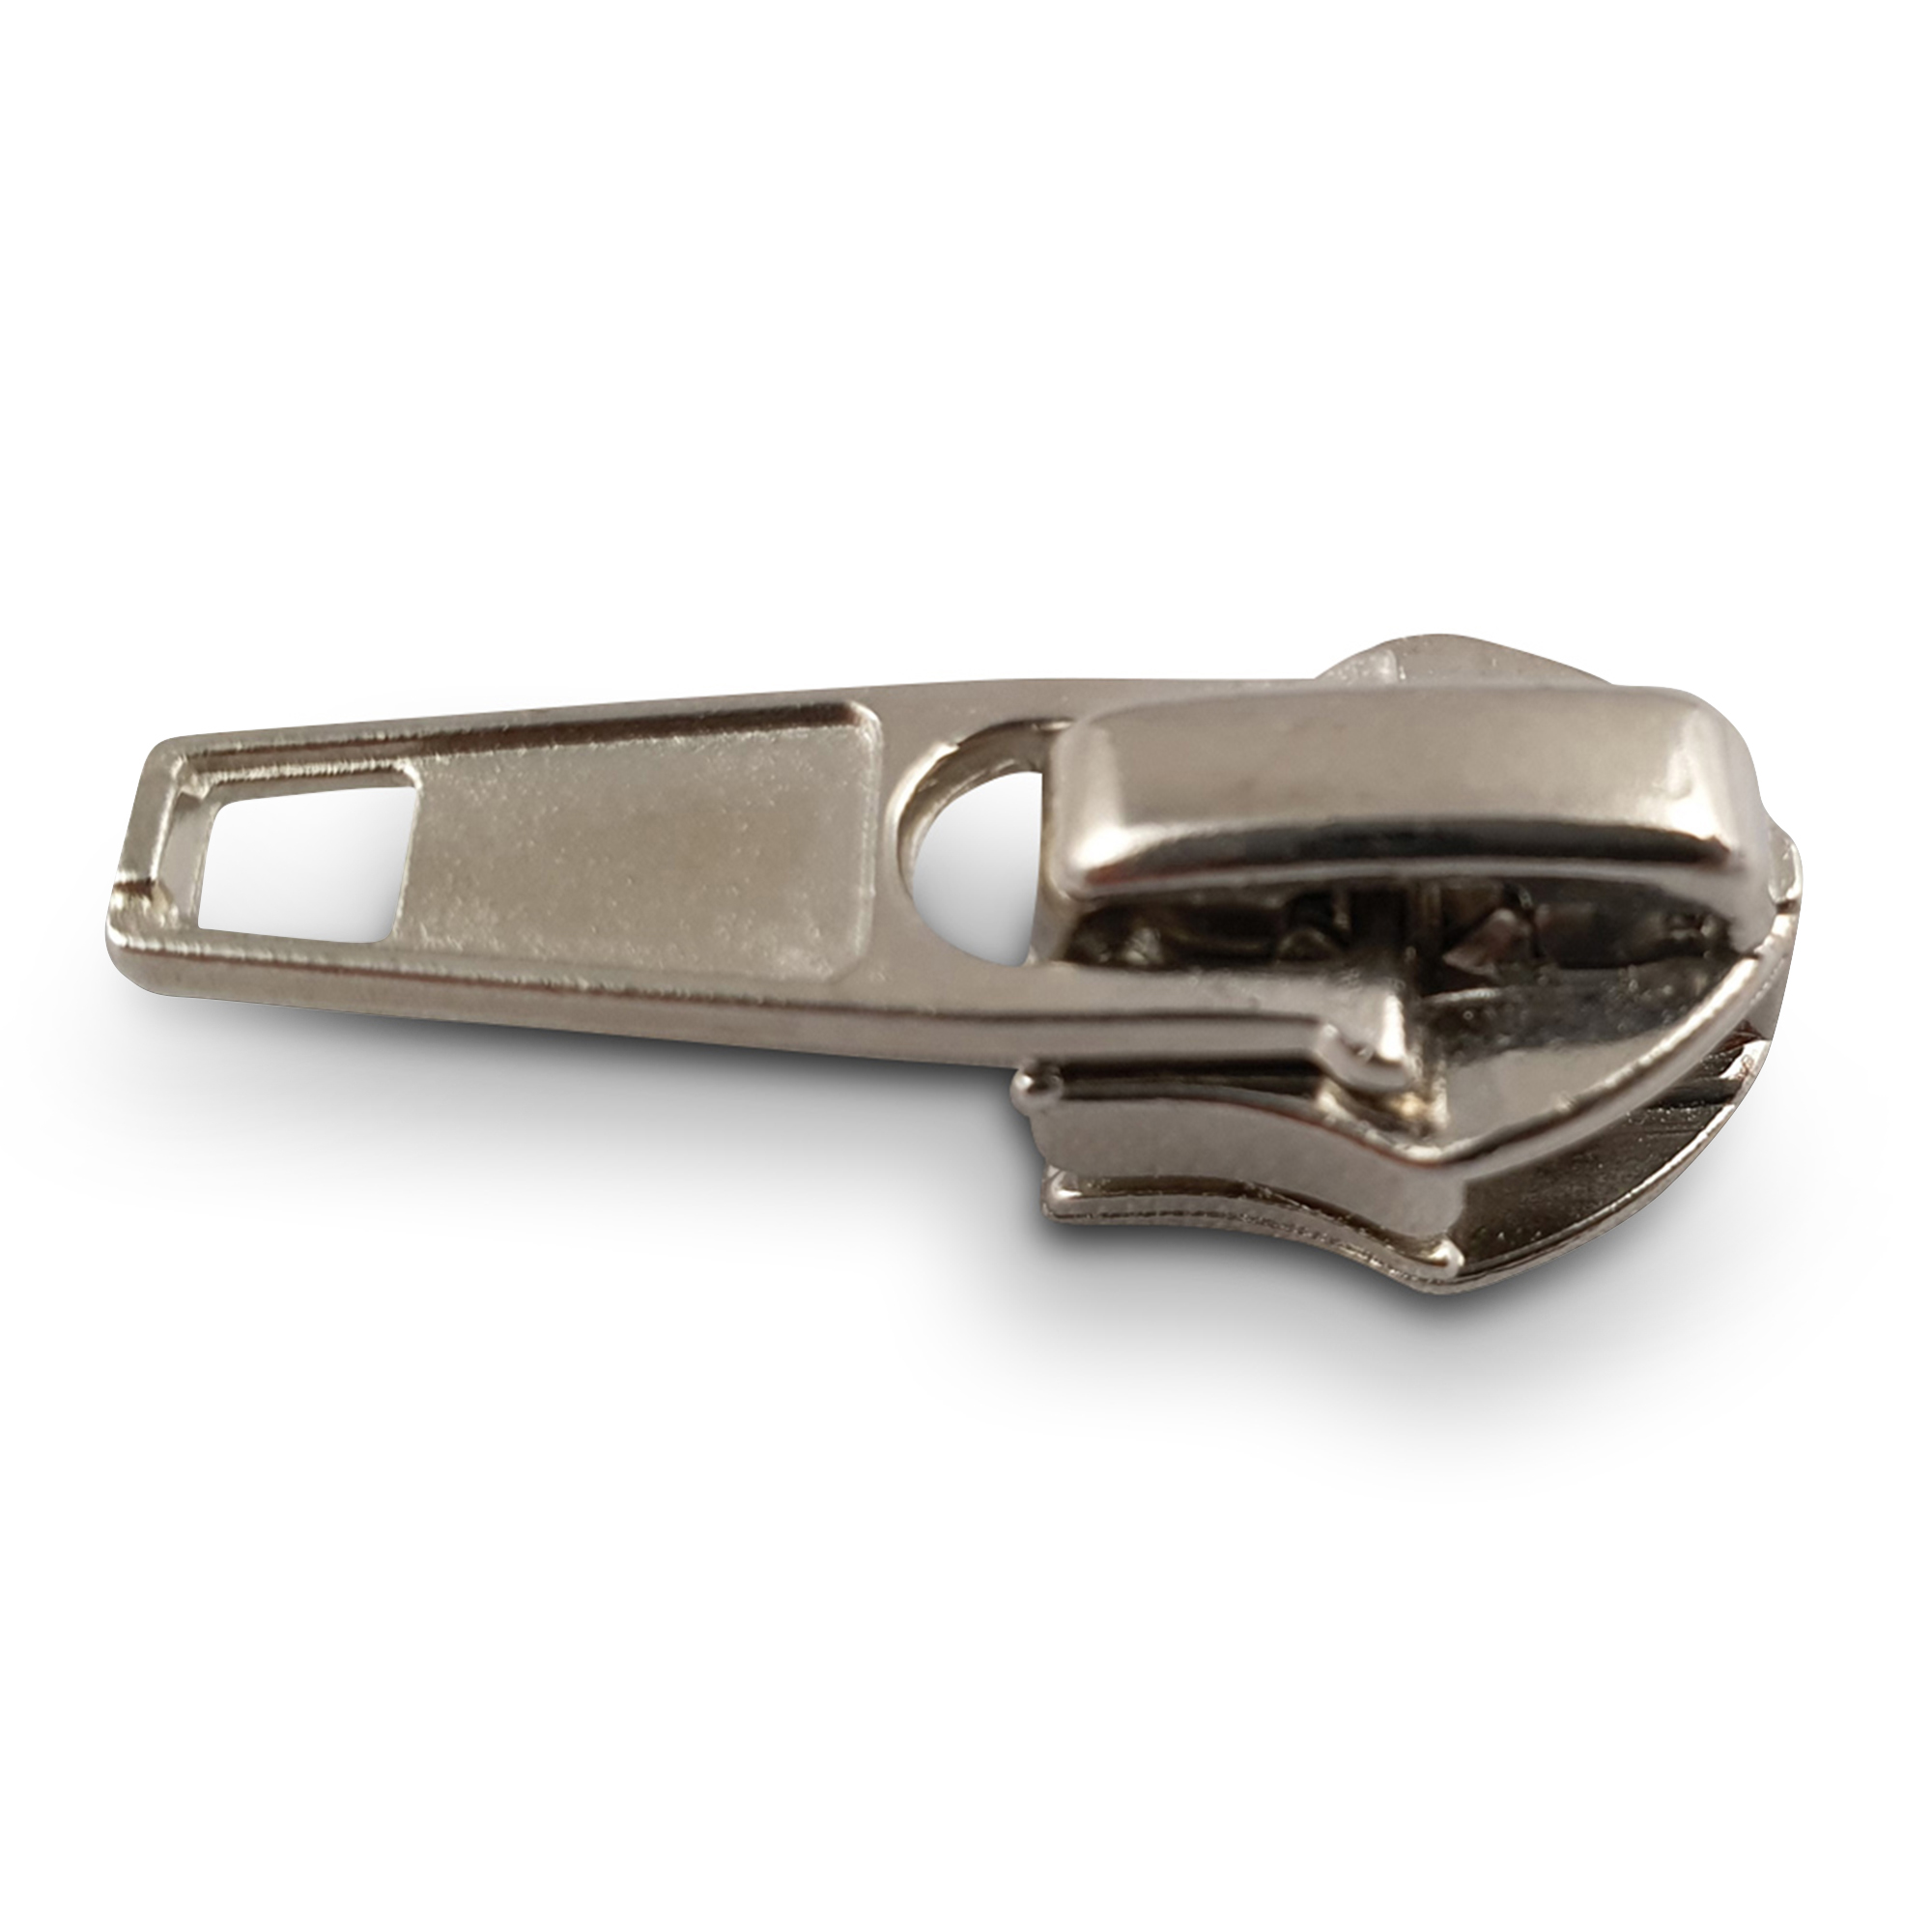 Schieber für 6 mm PE-SpiralReißverschlüsse silberfarbig  (Taschen- und Kofferschieber), hochwertiger Marken-Reißverschluss von Rubi/Barcelona